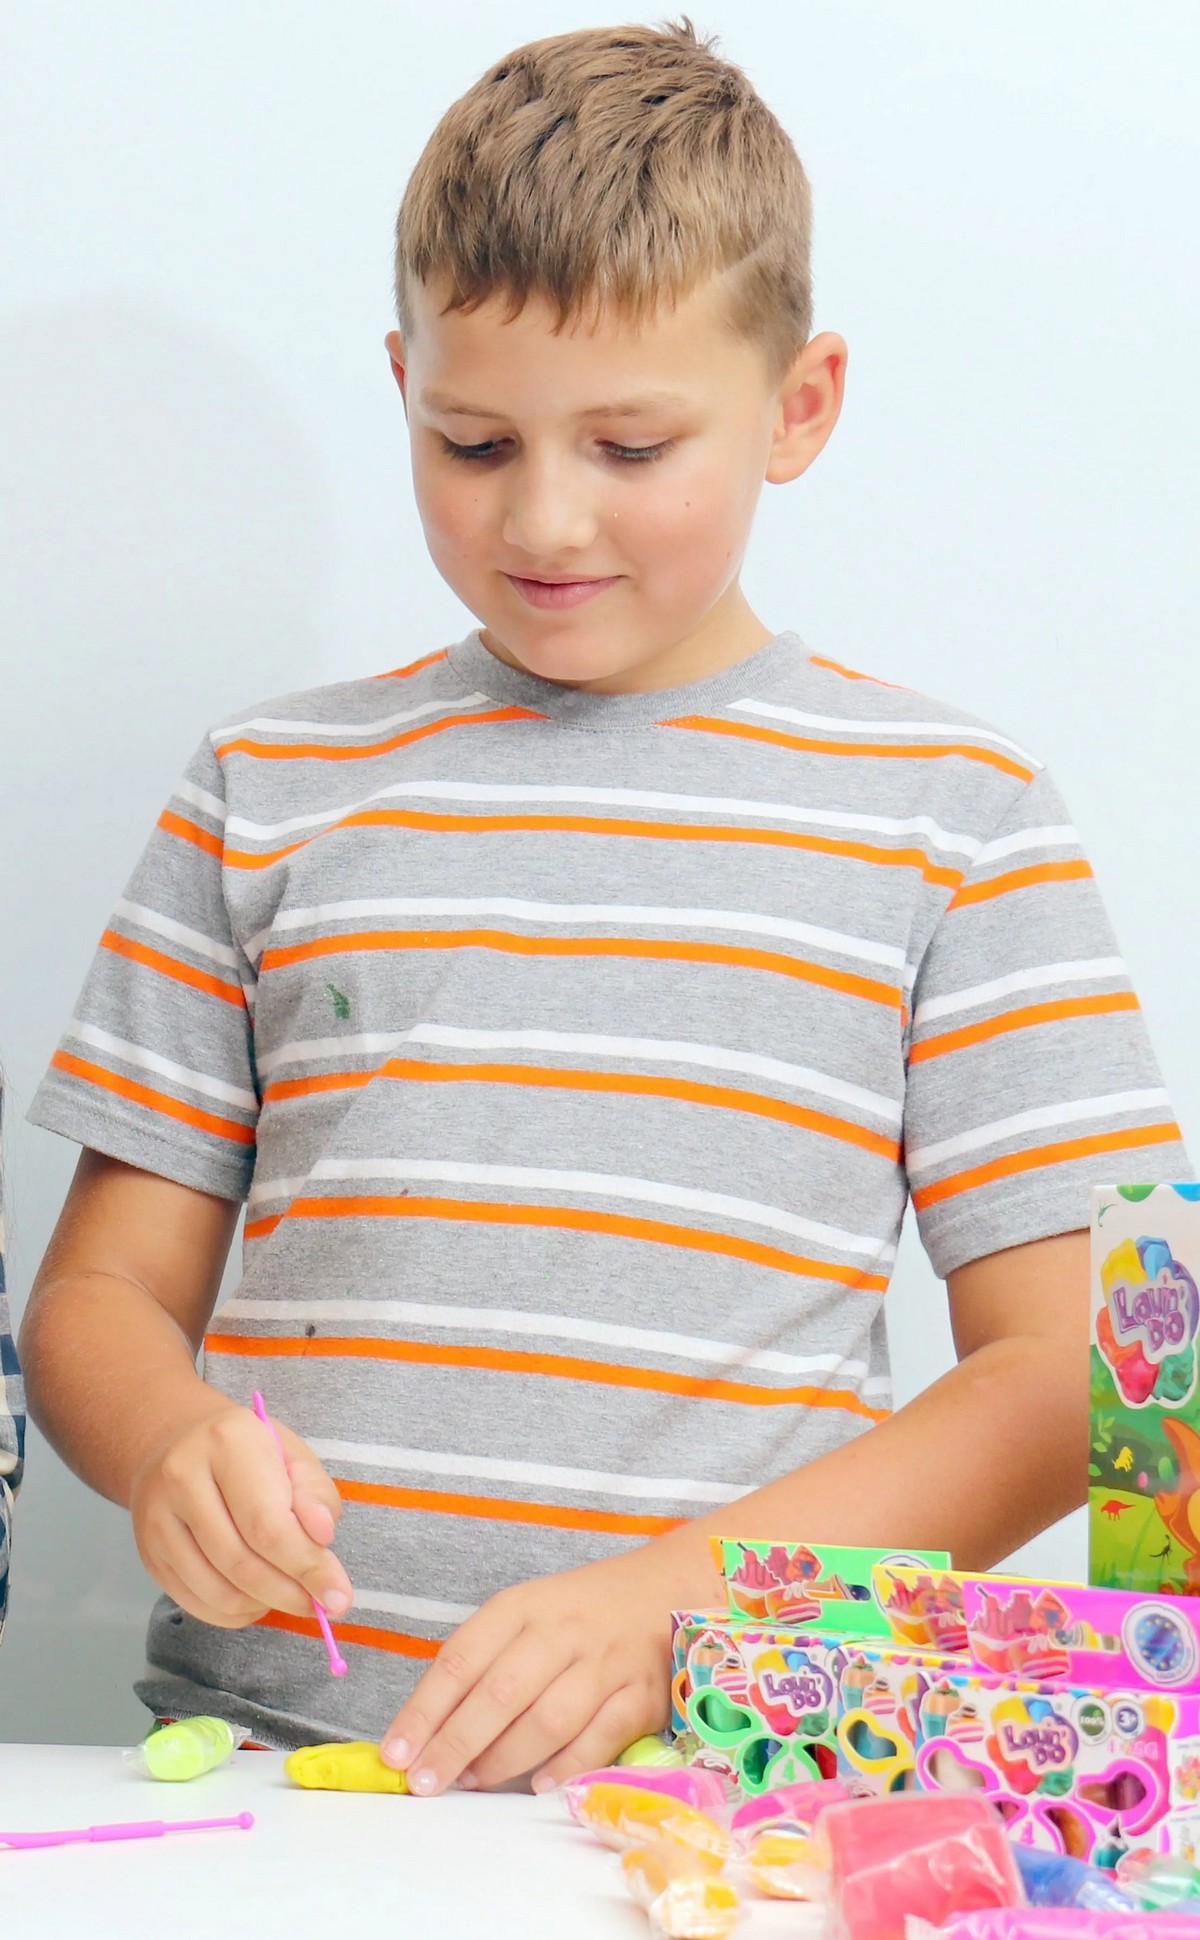 Knete Modellierung Knetmasse Kinder Spielzeug geschenk Idee Dinoland LovinD SET